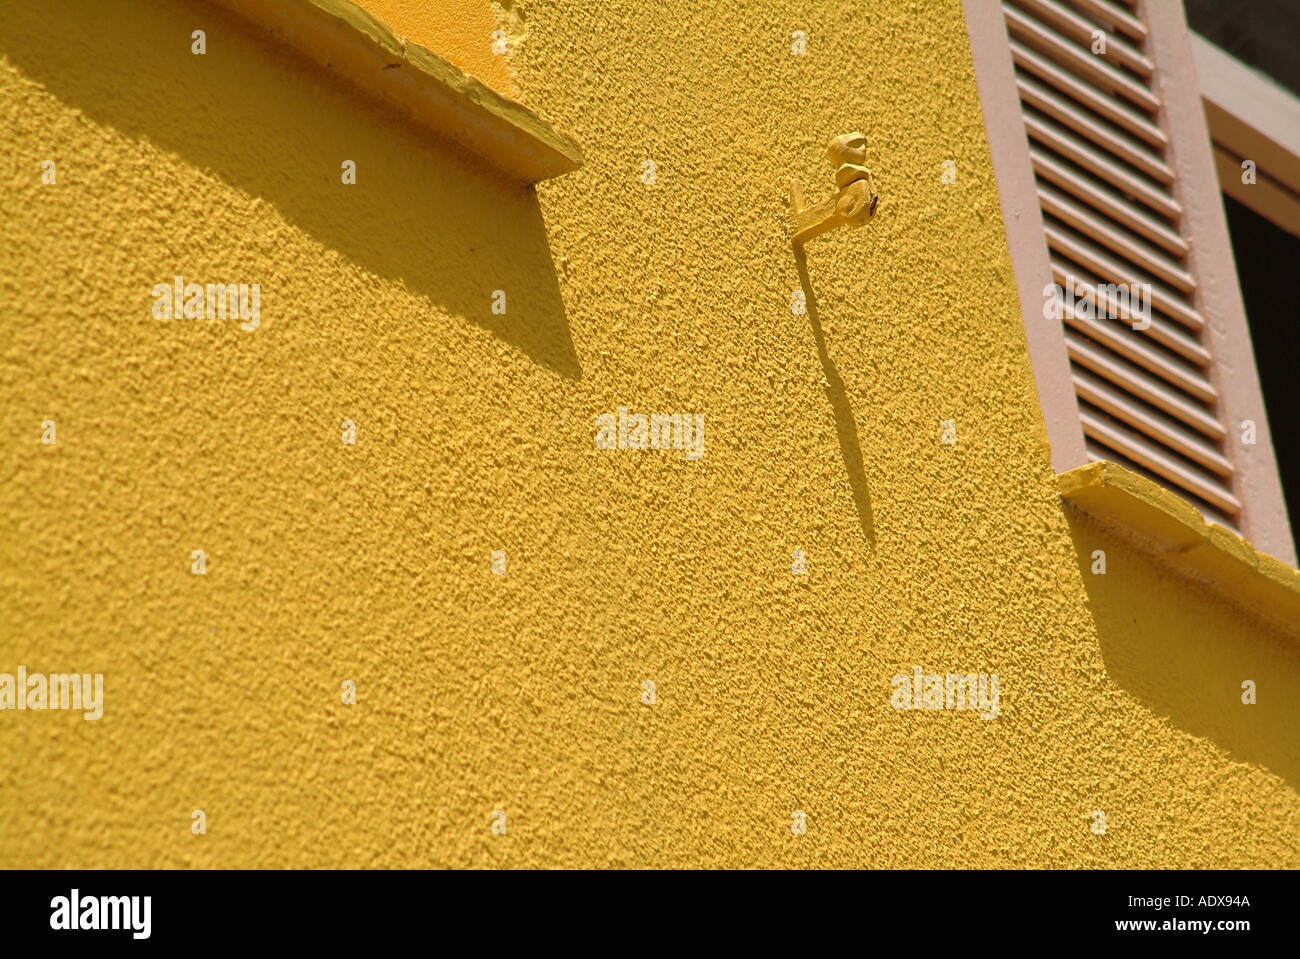 Volets Architecture façade jaune ocre ombre ensoleillée détails art déco concept construction pittoresque 30 s Banque D'Images